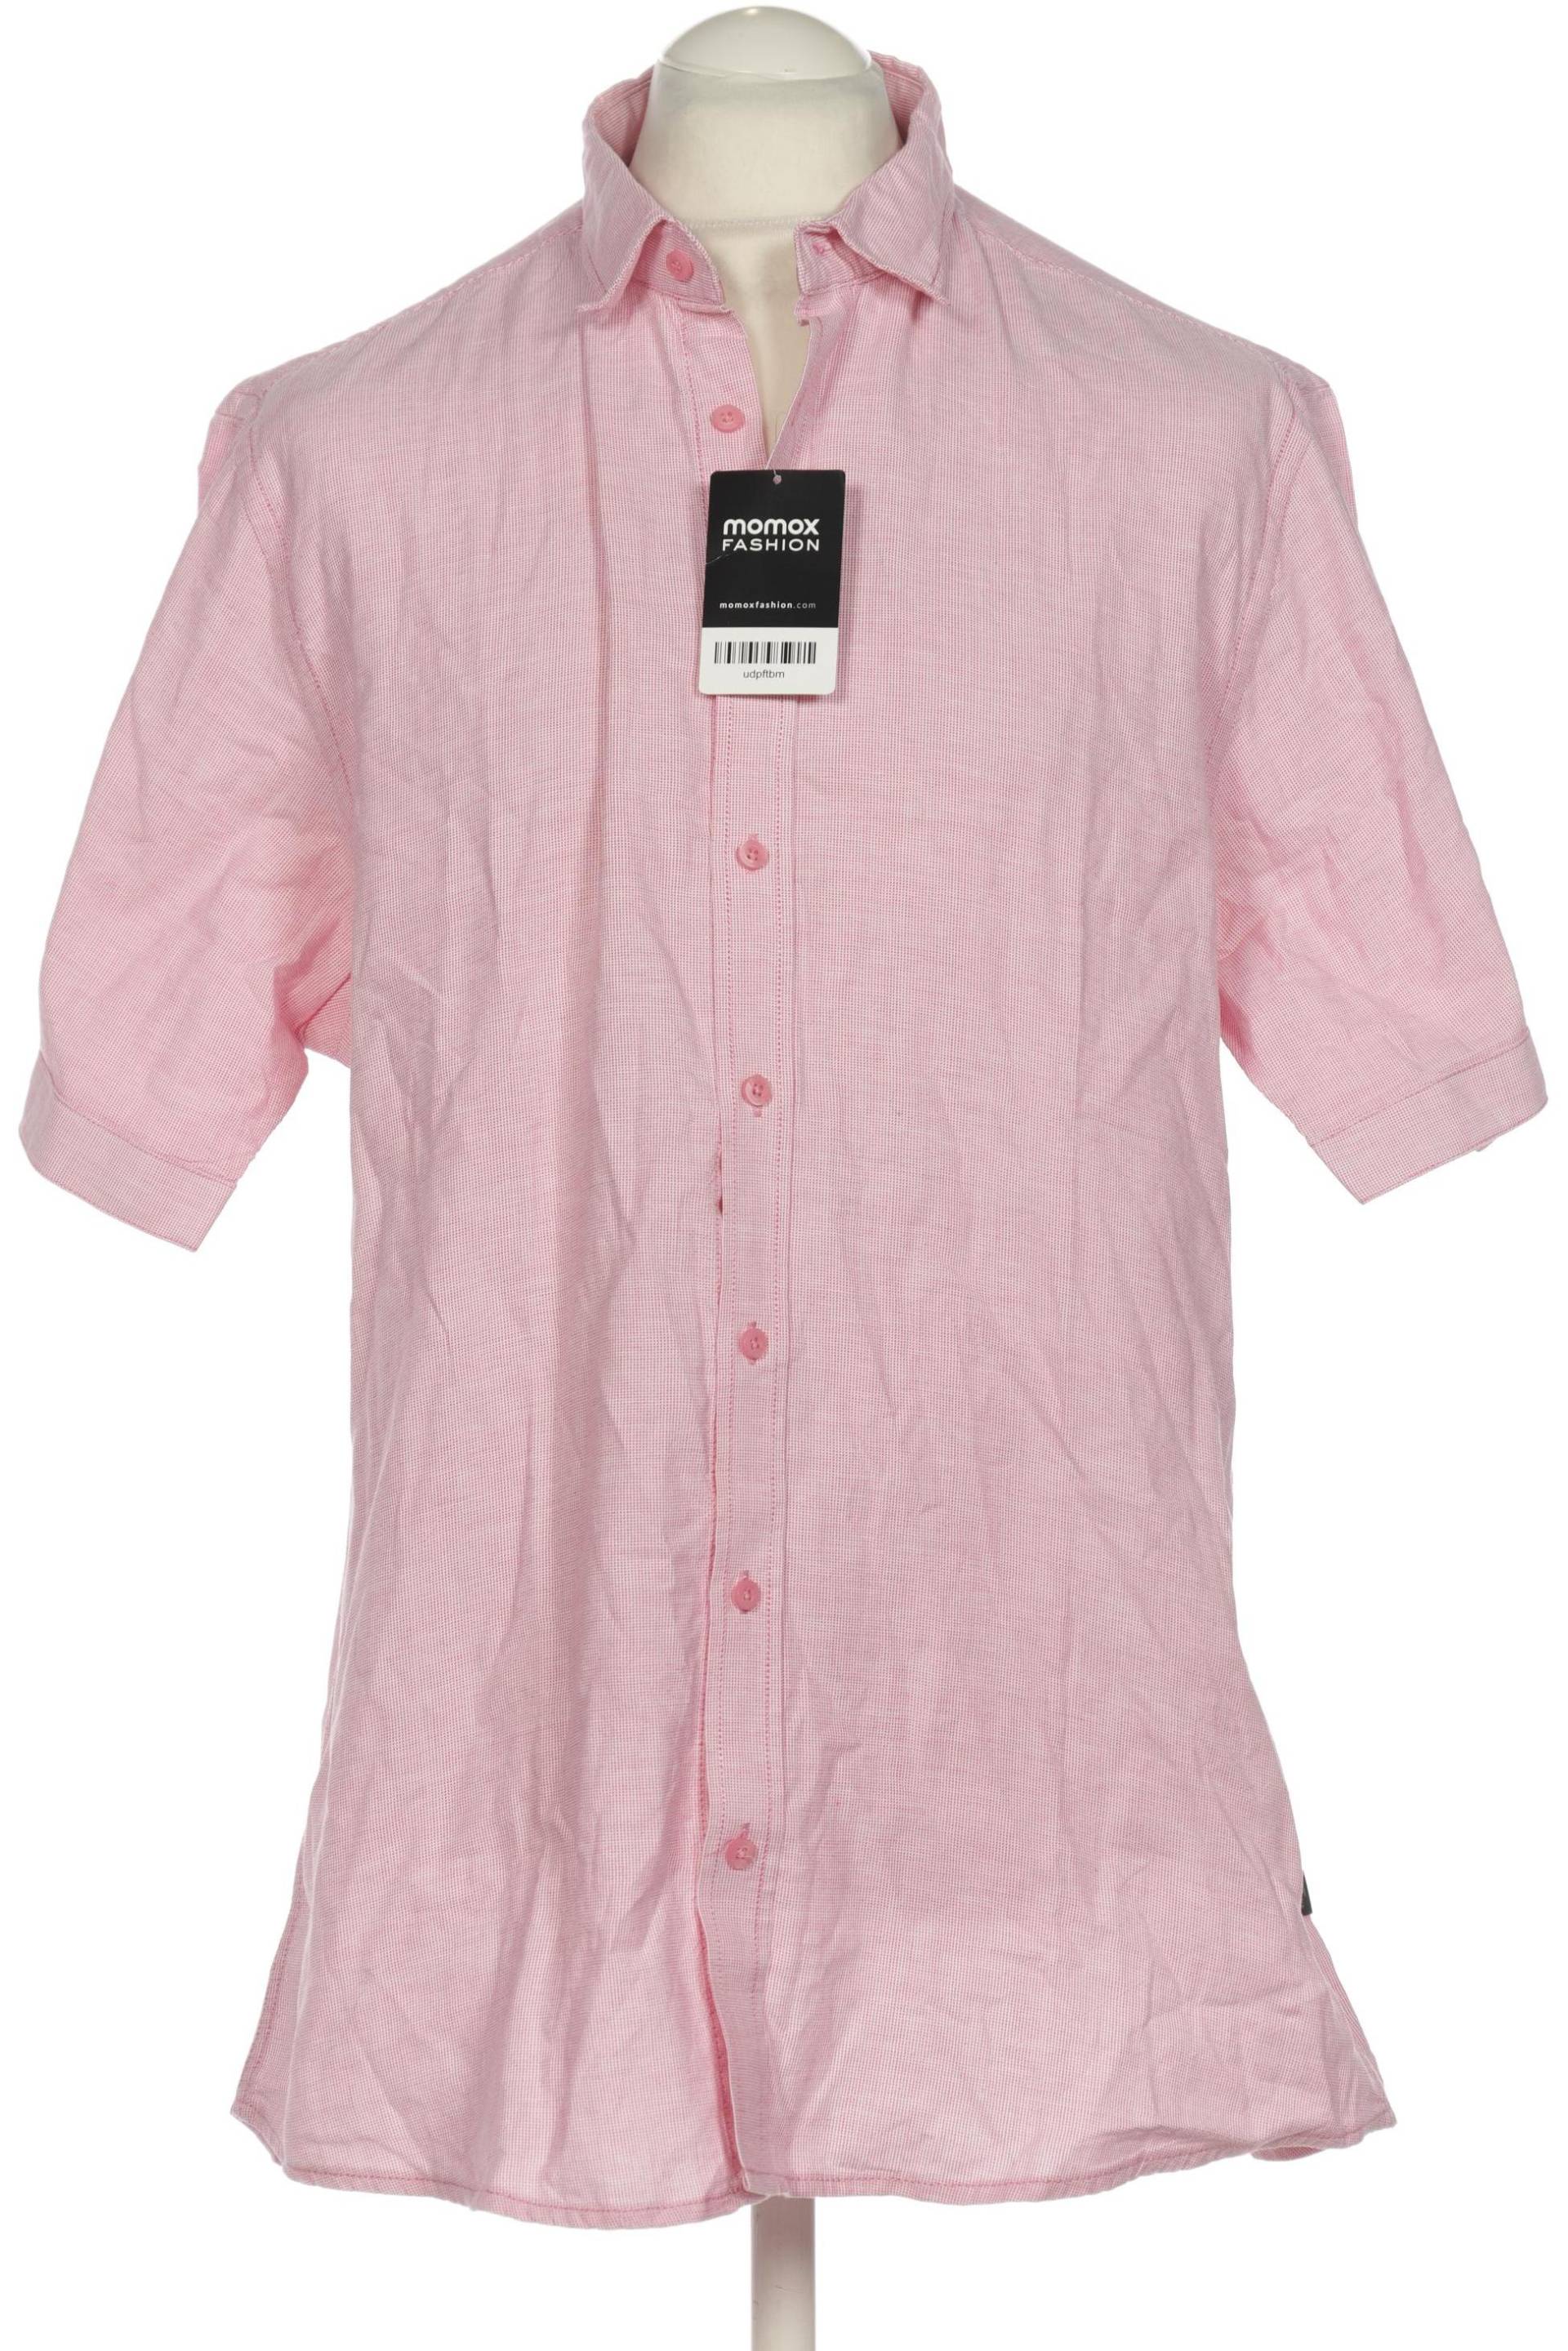 engbers Herren Hemd, pink, Gr. 54 von engbers